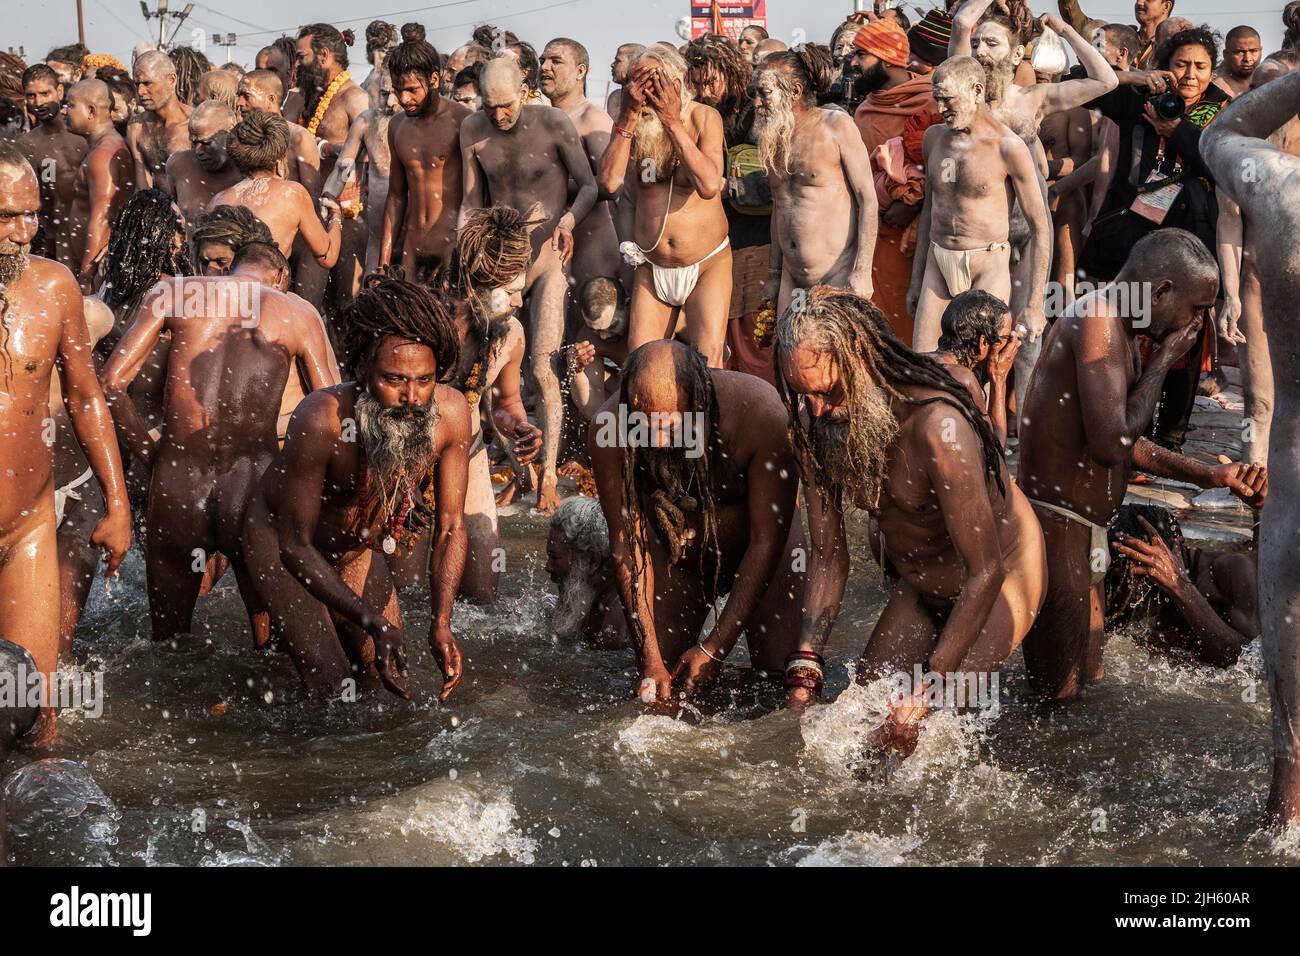 Naga Sadhus (uomini santi indiani) che si bagna nelle acque sacre al Sangam nel giorno più promettente del Festival di Kumbh Mela ad Allahabad, India. Foto Stock